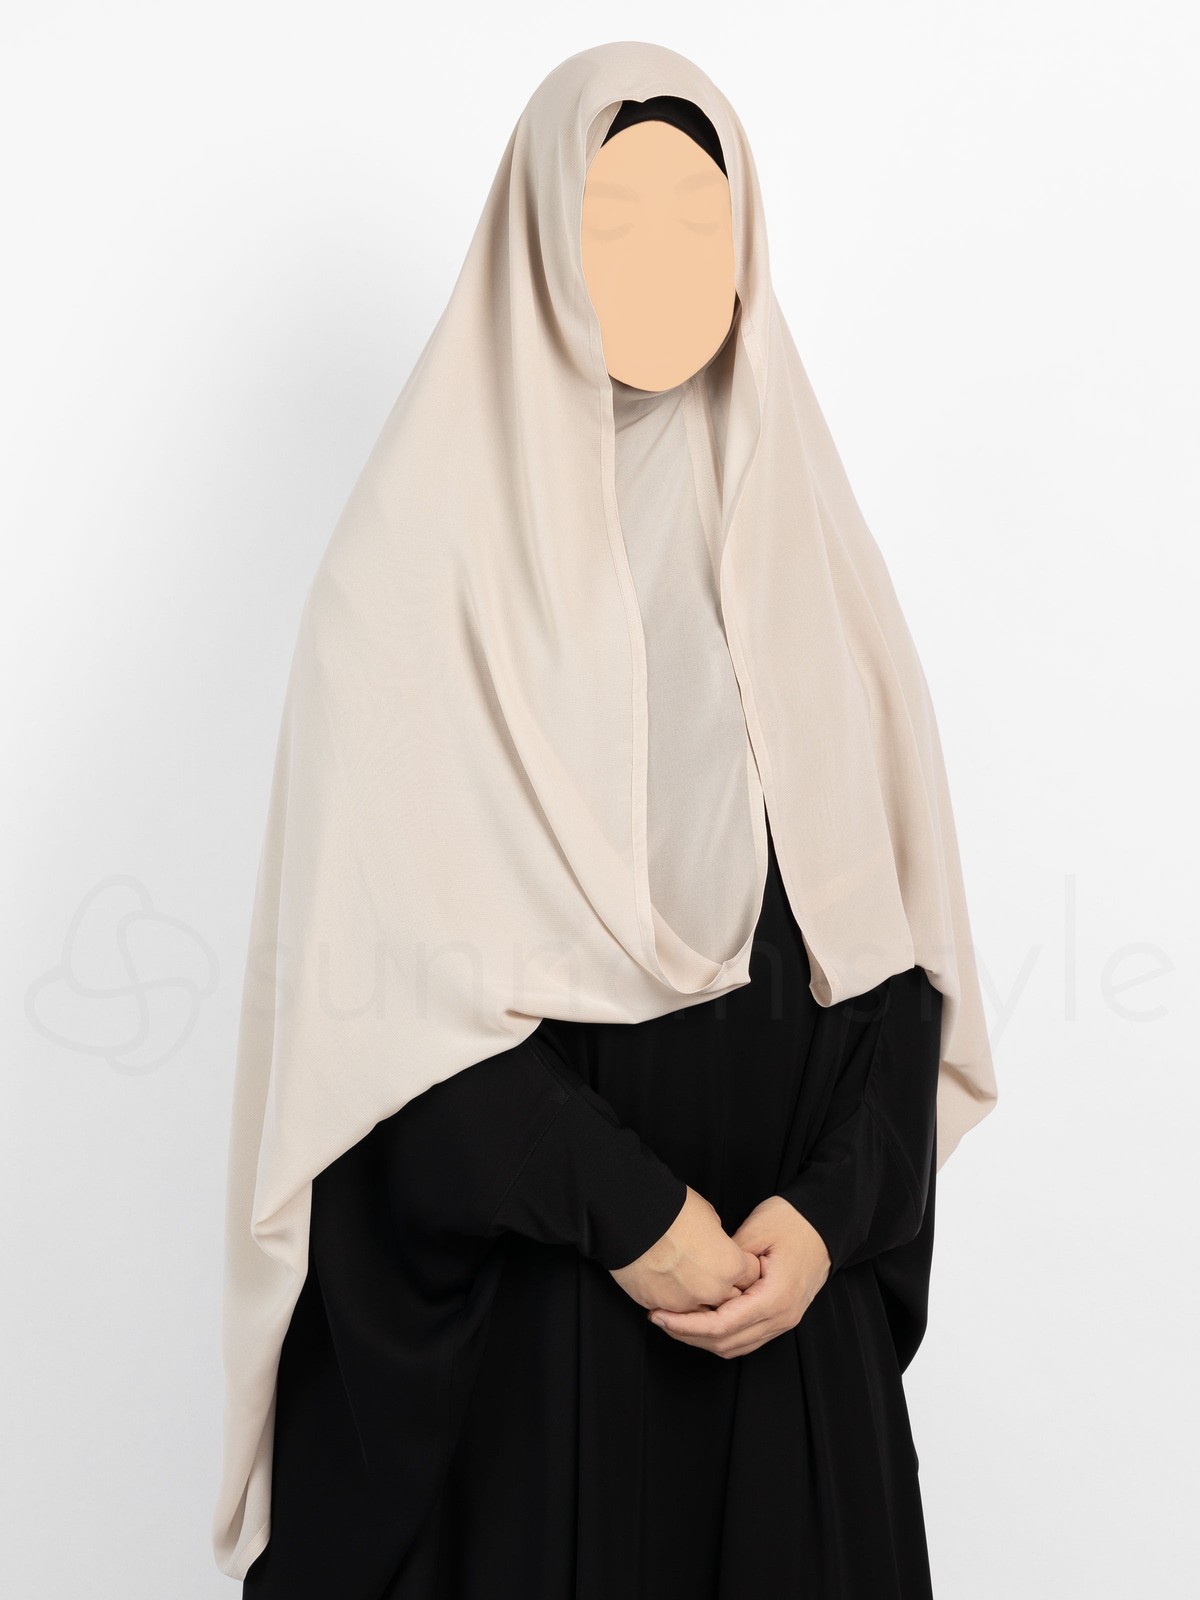 Sunnah Style - Butterfly Hijab (Sahara)